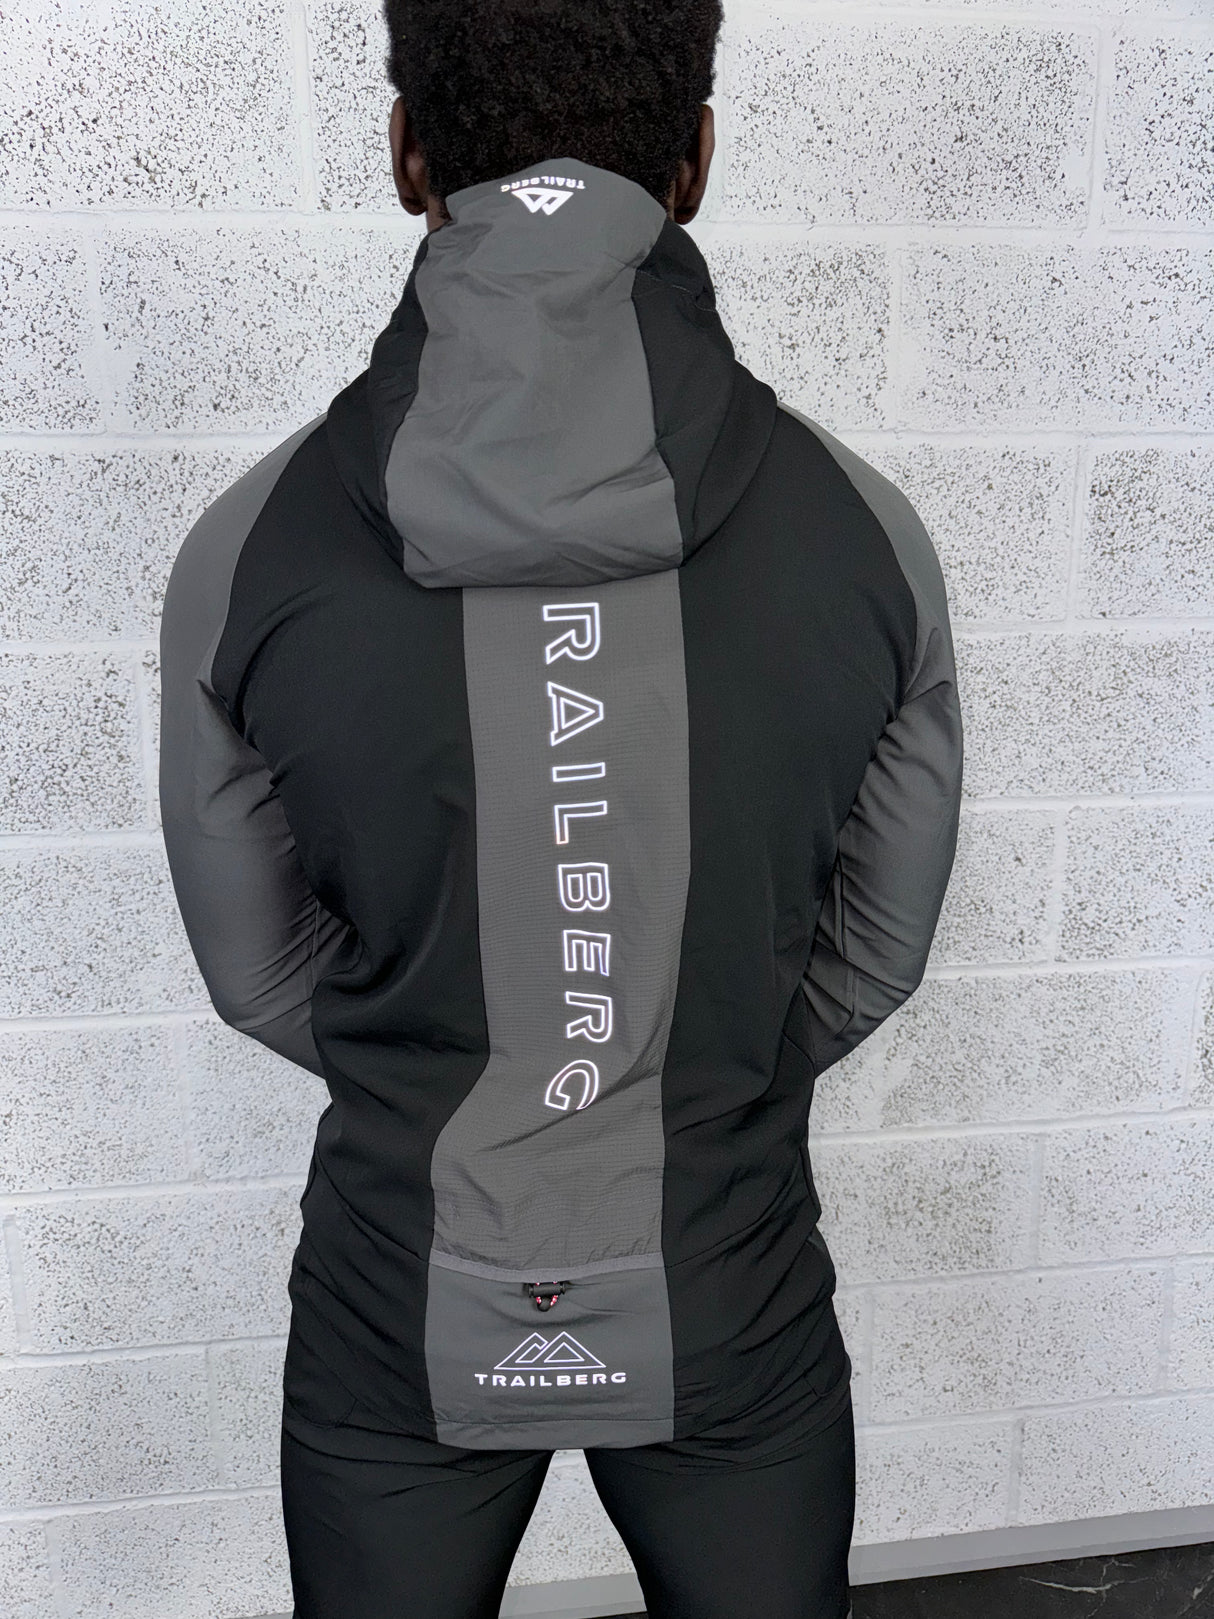 Trailberg - Rapid Keyline Jacket - Black/Grey